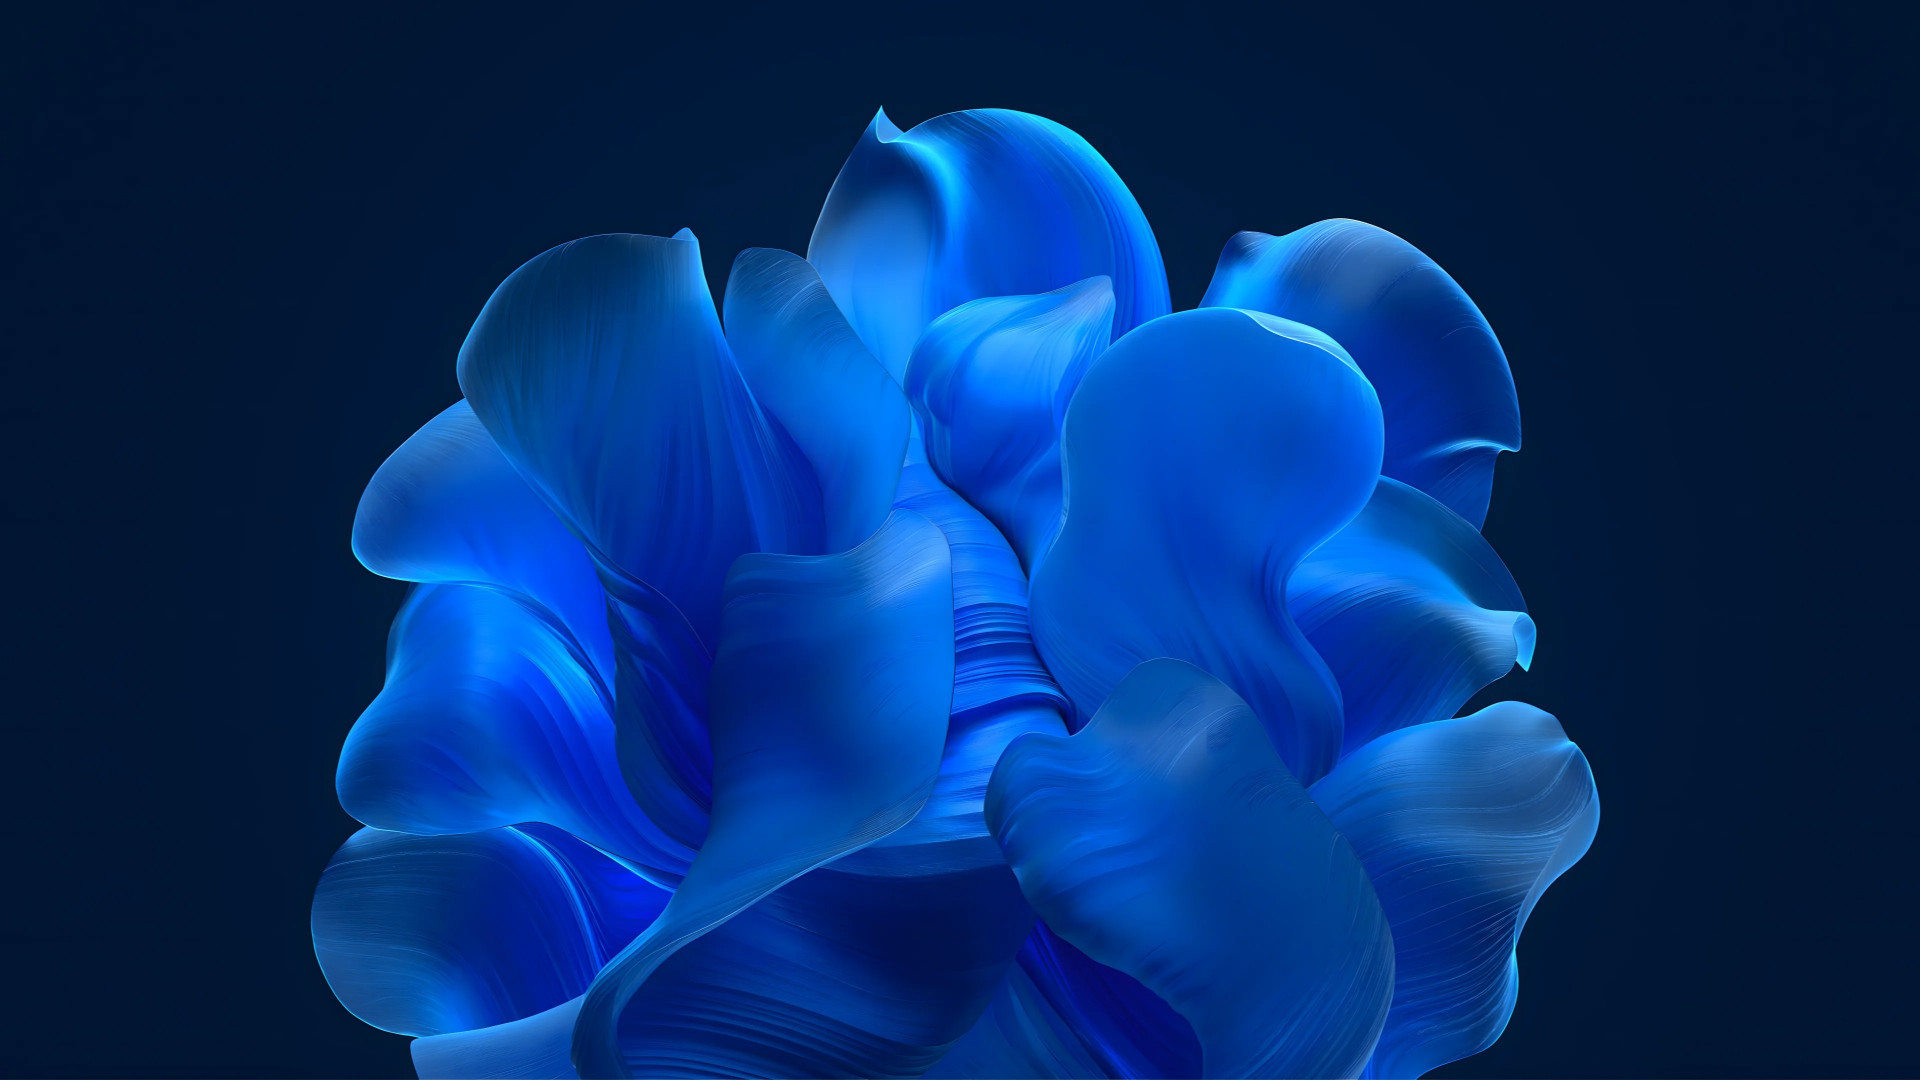 The blue petals wallpaper 1920x1080